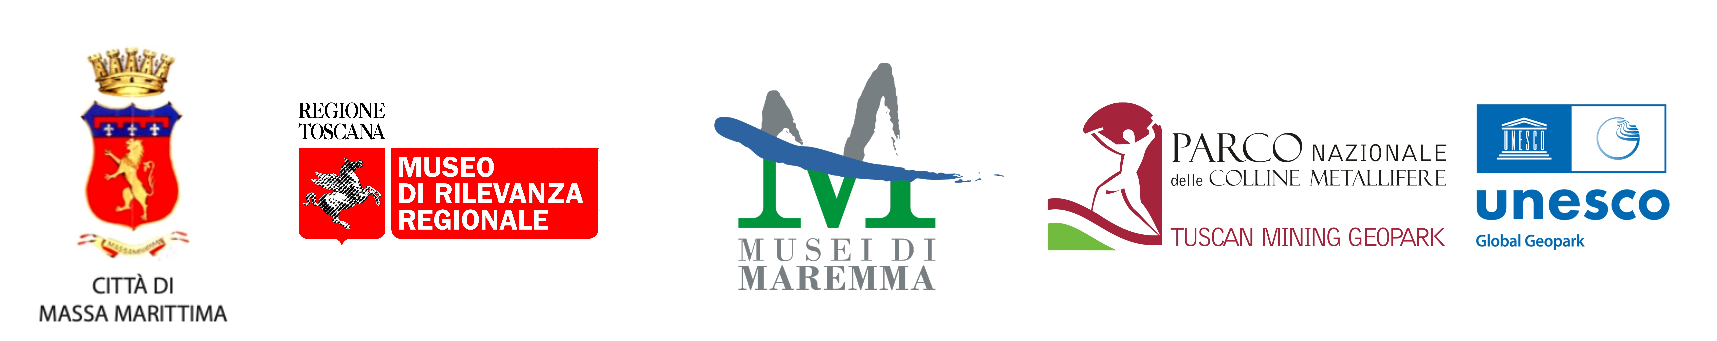 Logo del comune di Massa Marittima. Logo della regione Toscana con scritto museo di rilevanza regionale, logo dei musei della maremma e il logo del Parco Nazionale delle Colline Metallifere